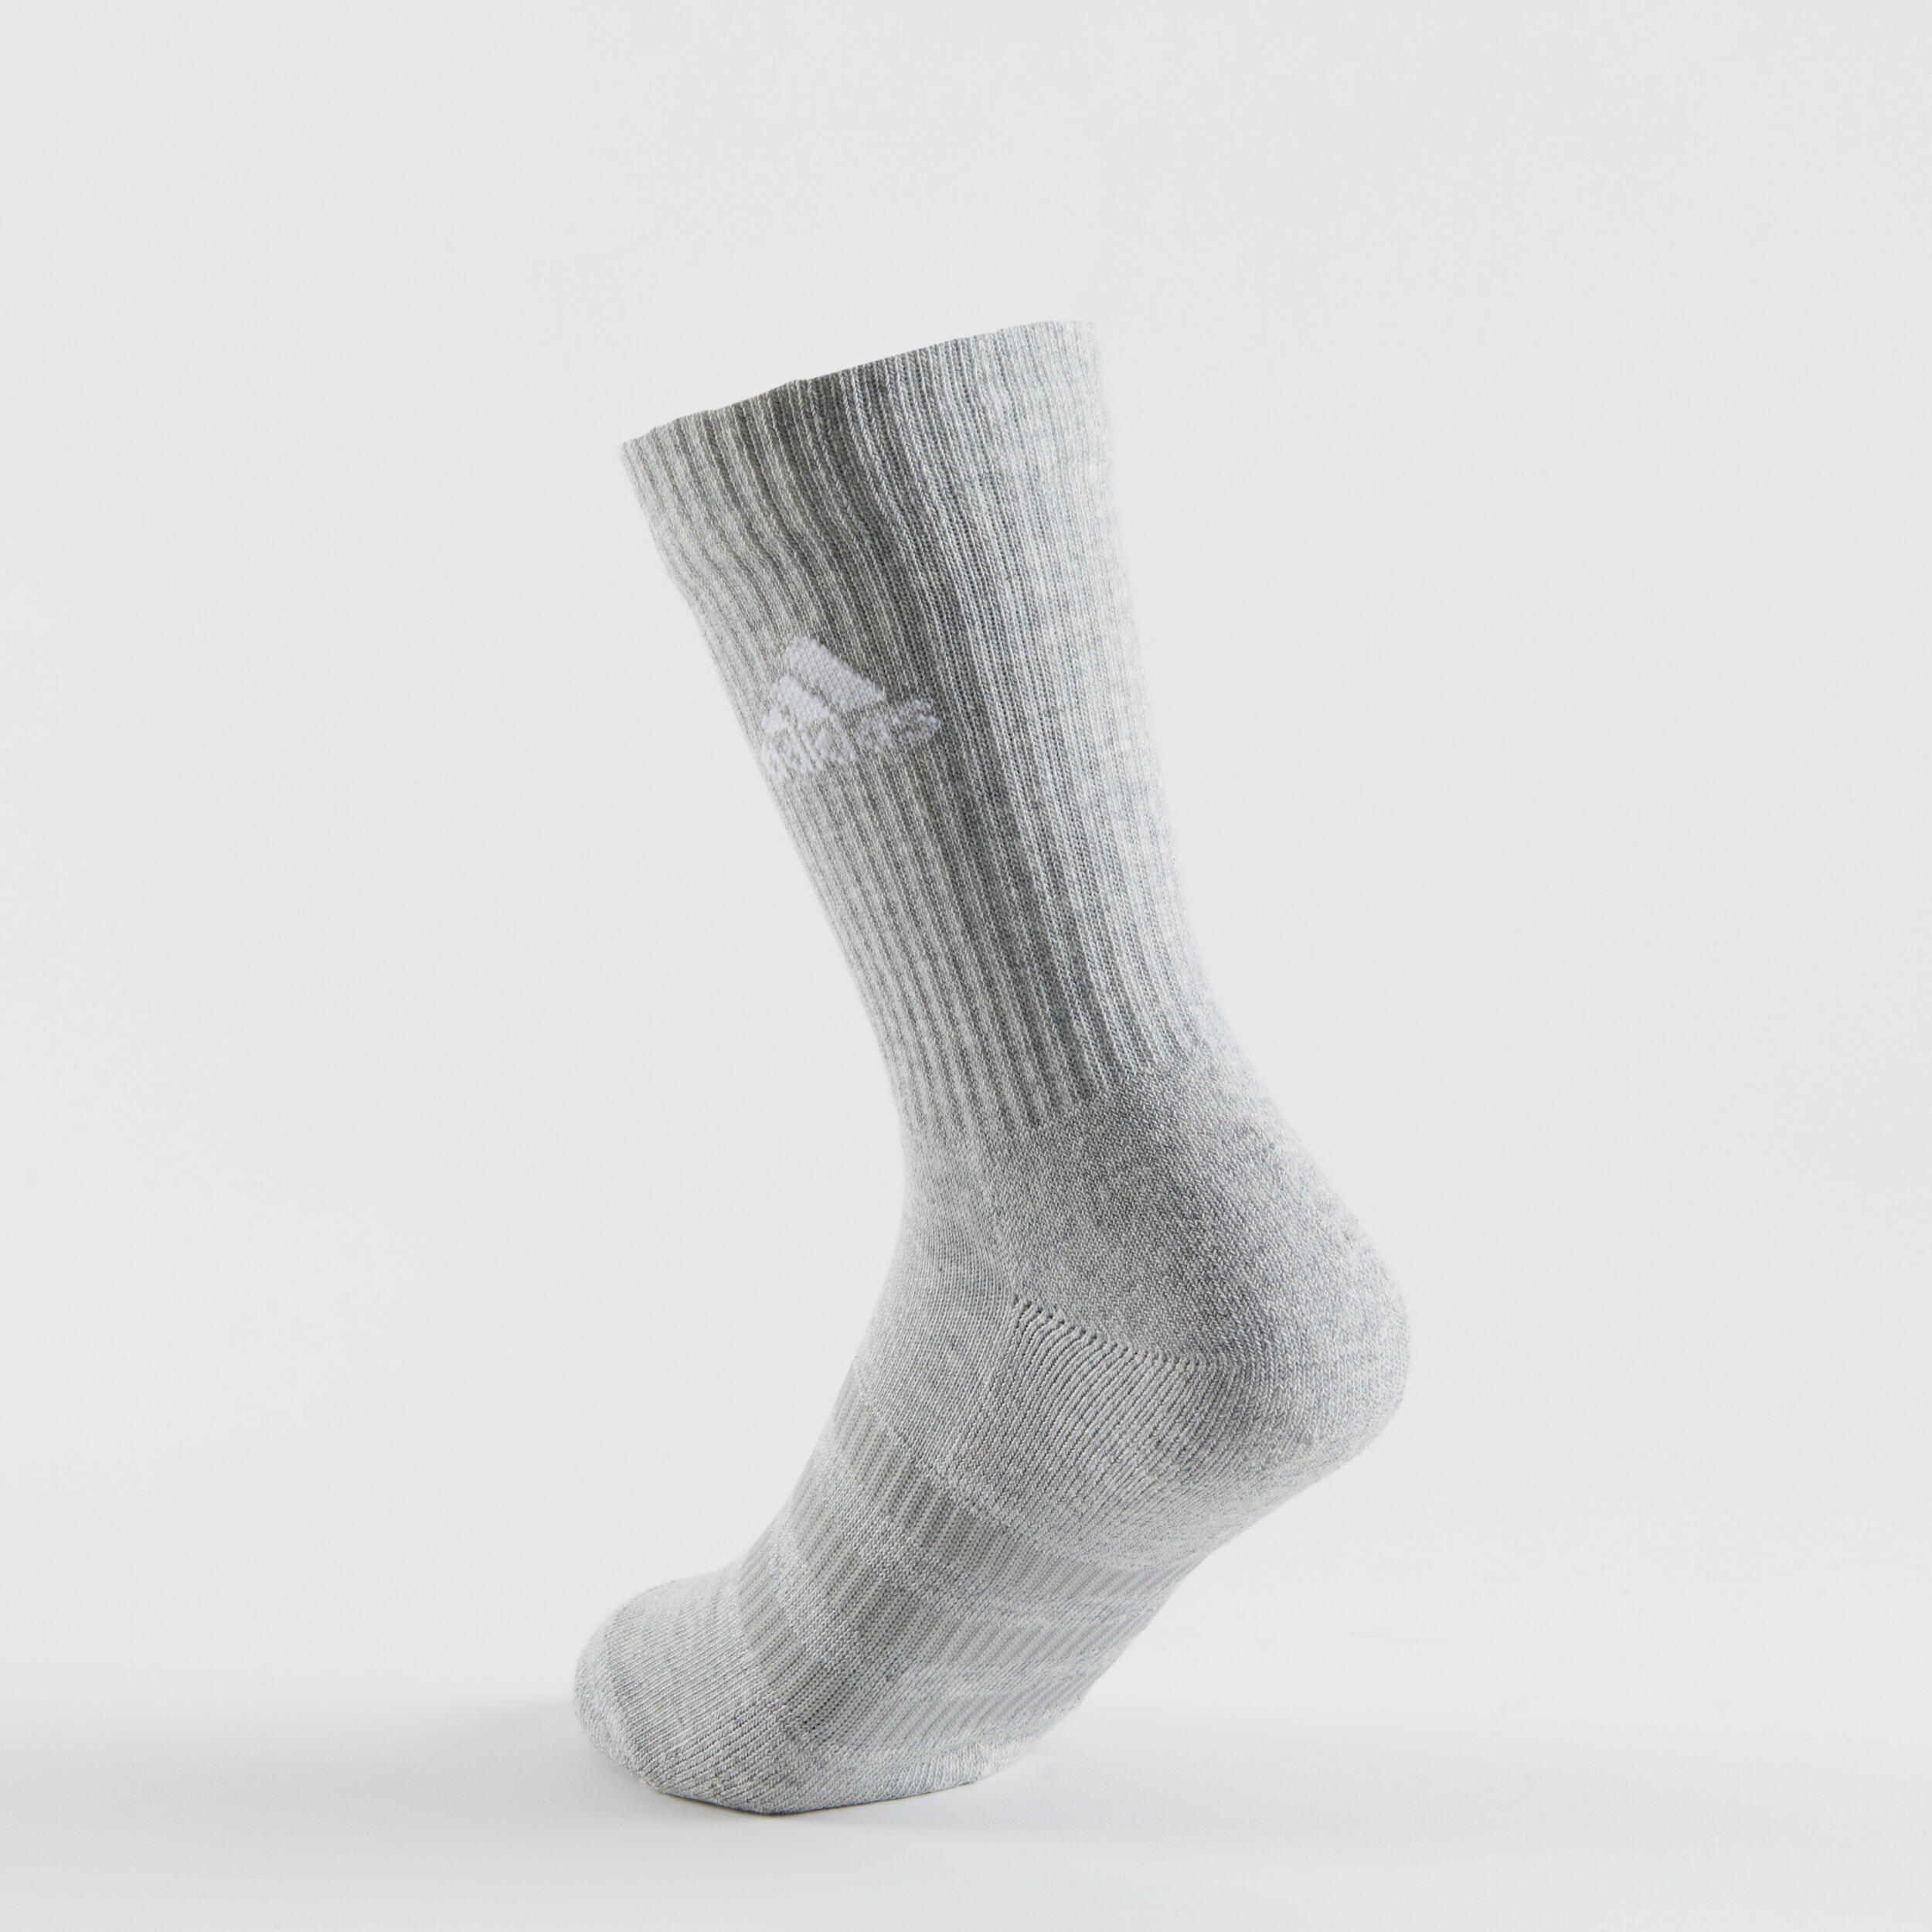 High Sports Socks Tri-Pack - Grey/White/Black 5/14